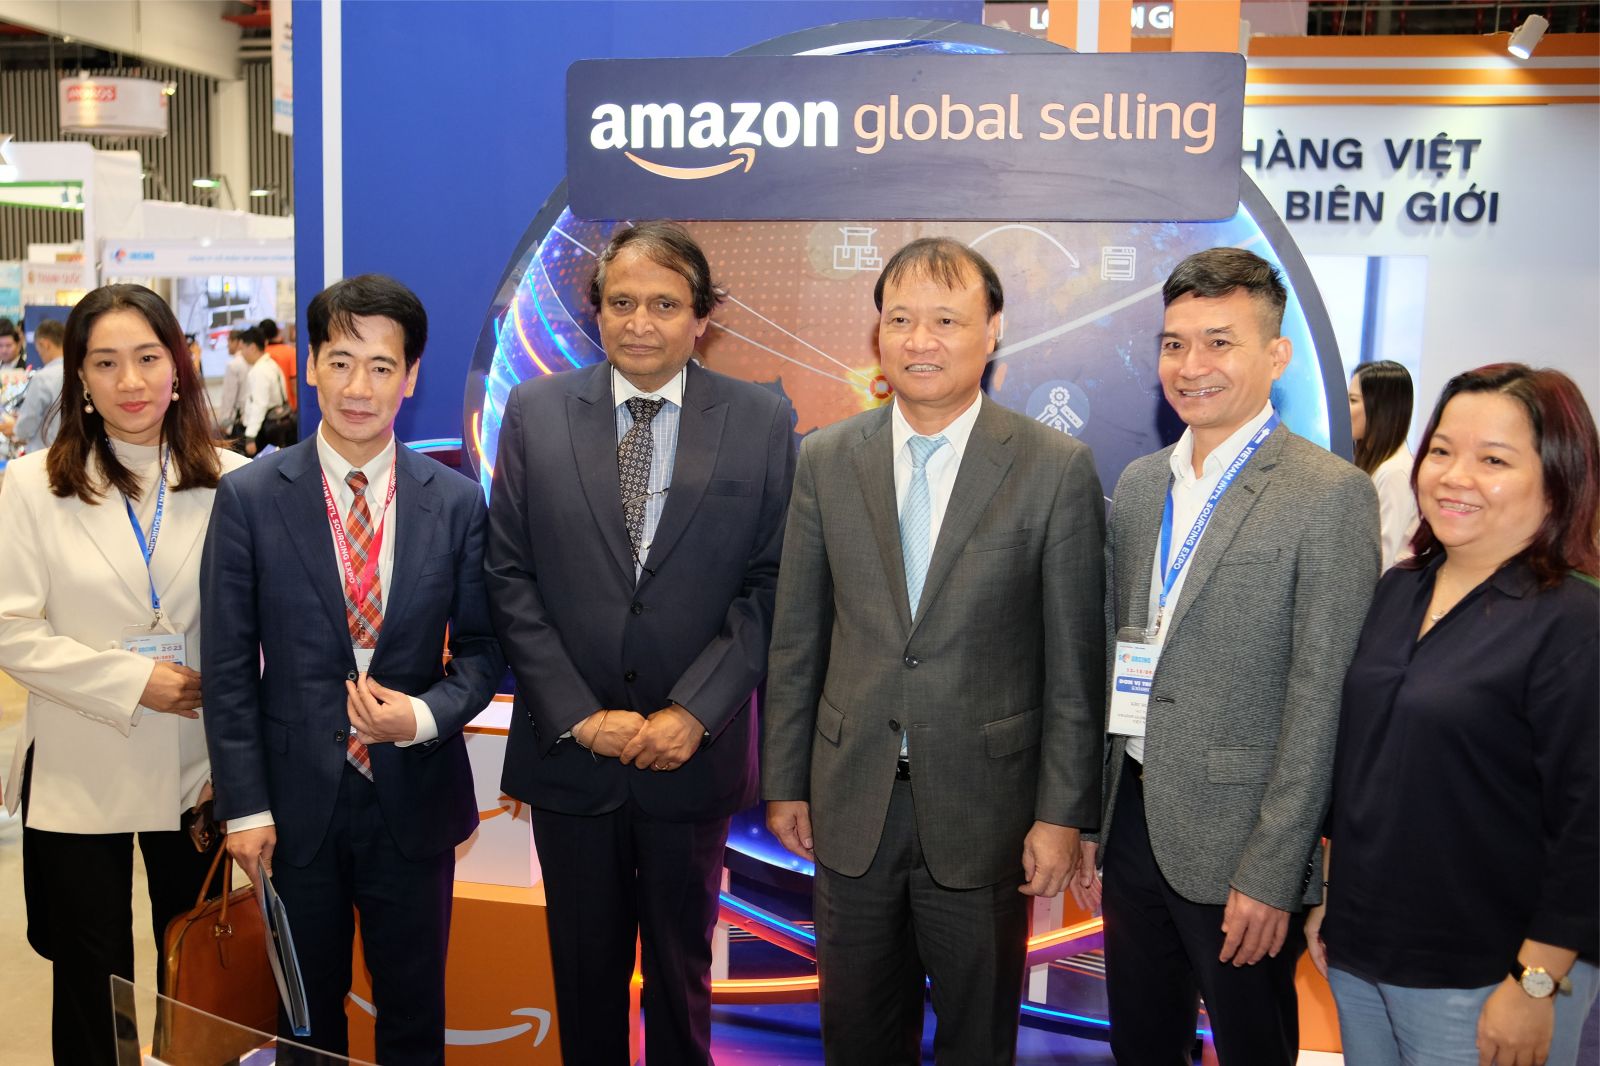 Thứ trưởng Bộ Công Thương Đỗ Thắng Hải (thứ 3 từ phải qua), Vụ trưởng Vụ thị trường Âu-Mỹ Tạ Hoàng Linh (thứ 2 từ trái sang) và Giám đốc miền Nam Amazon Global Selling Việt Nam Trần Xuân Thủy (thứ 2 từ phải qua) khai mạc gian hàng Amazon Global Selling Việt Nam tại Vietnam International Sourcing Expo 2023. 